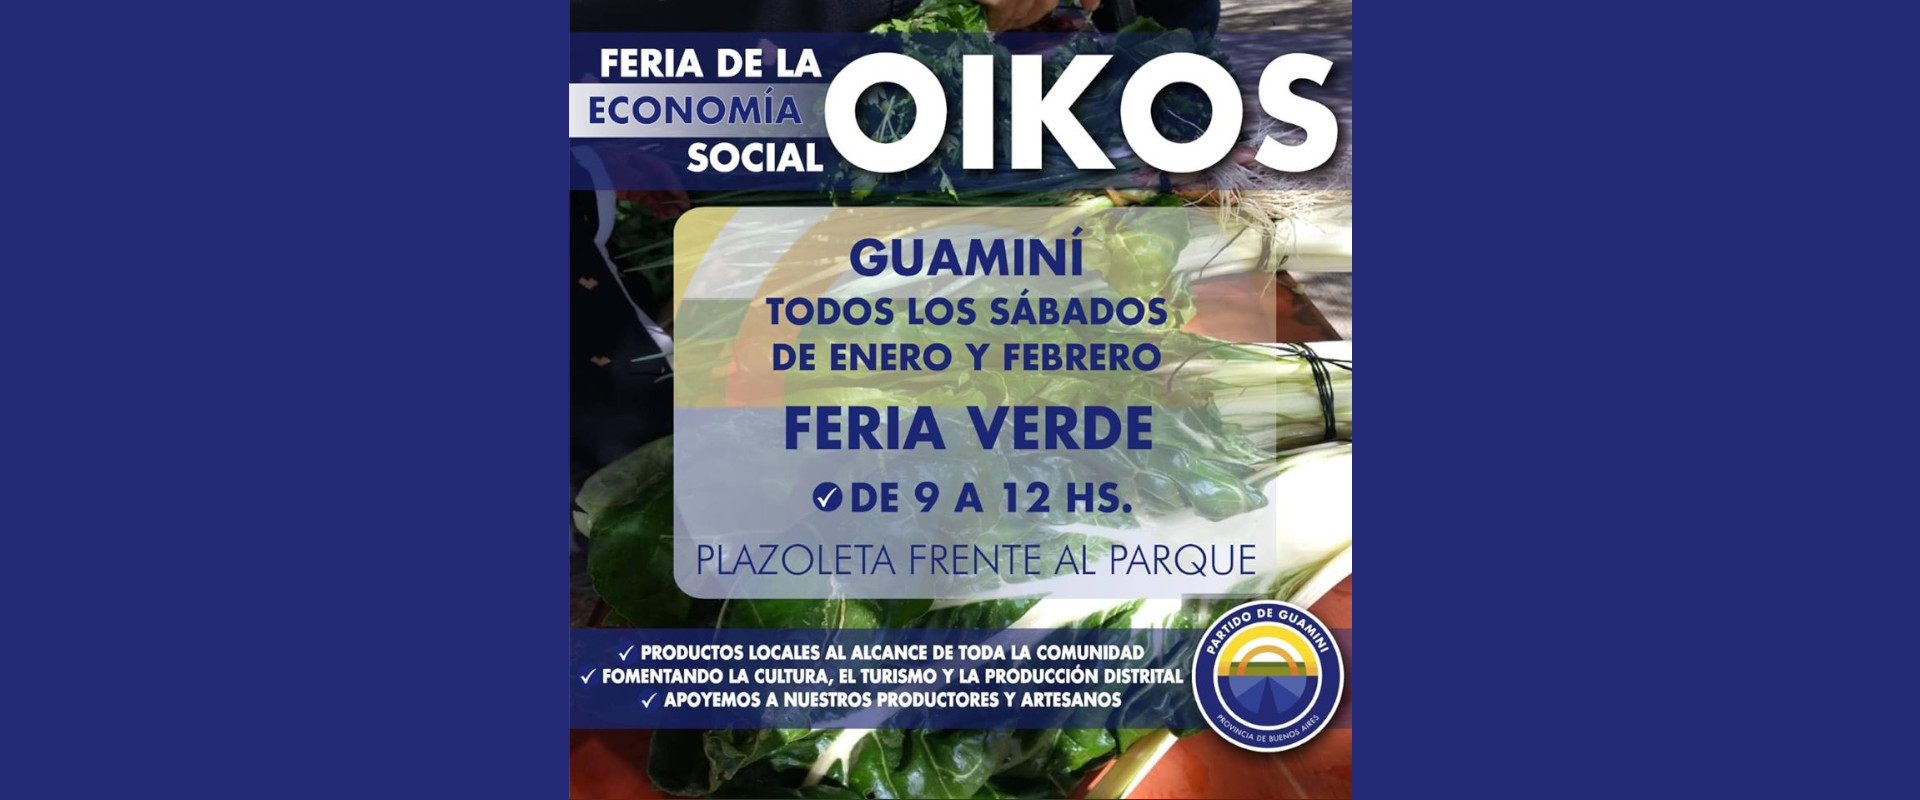 la feria "oikos" continuará acercando sus productos a los vecinos de guaminí